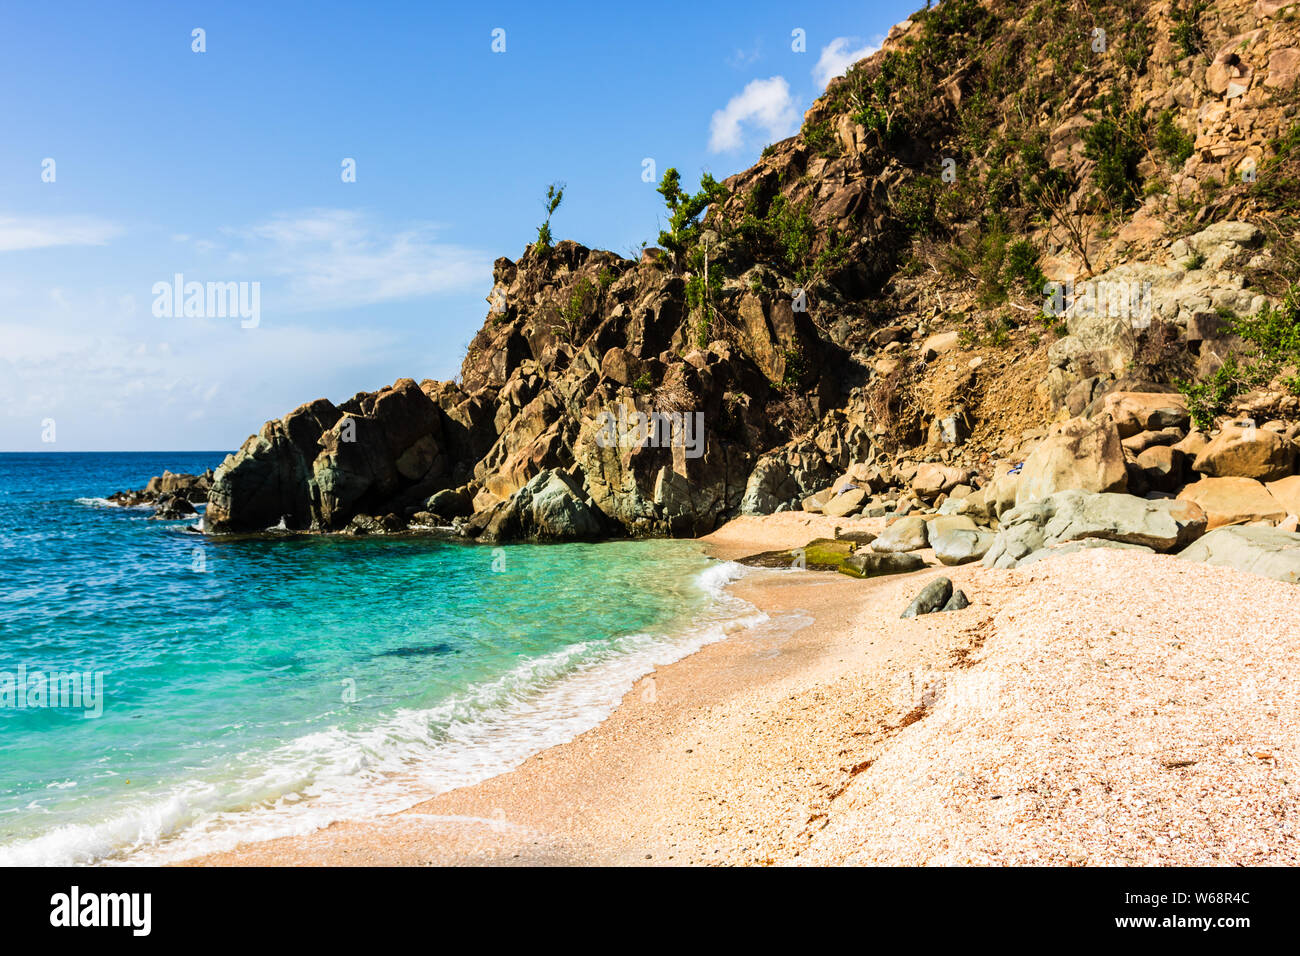 Photo de voyage de Saint Barth's, l'île des Caraïbes. La célèbre plage de Shell Beach, à St-barth's (St. Bart's) des Caraïbes. Banque D'Images